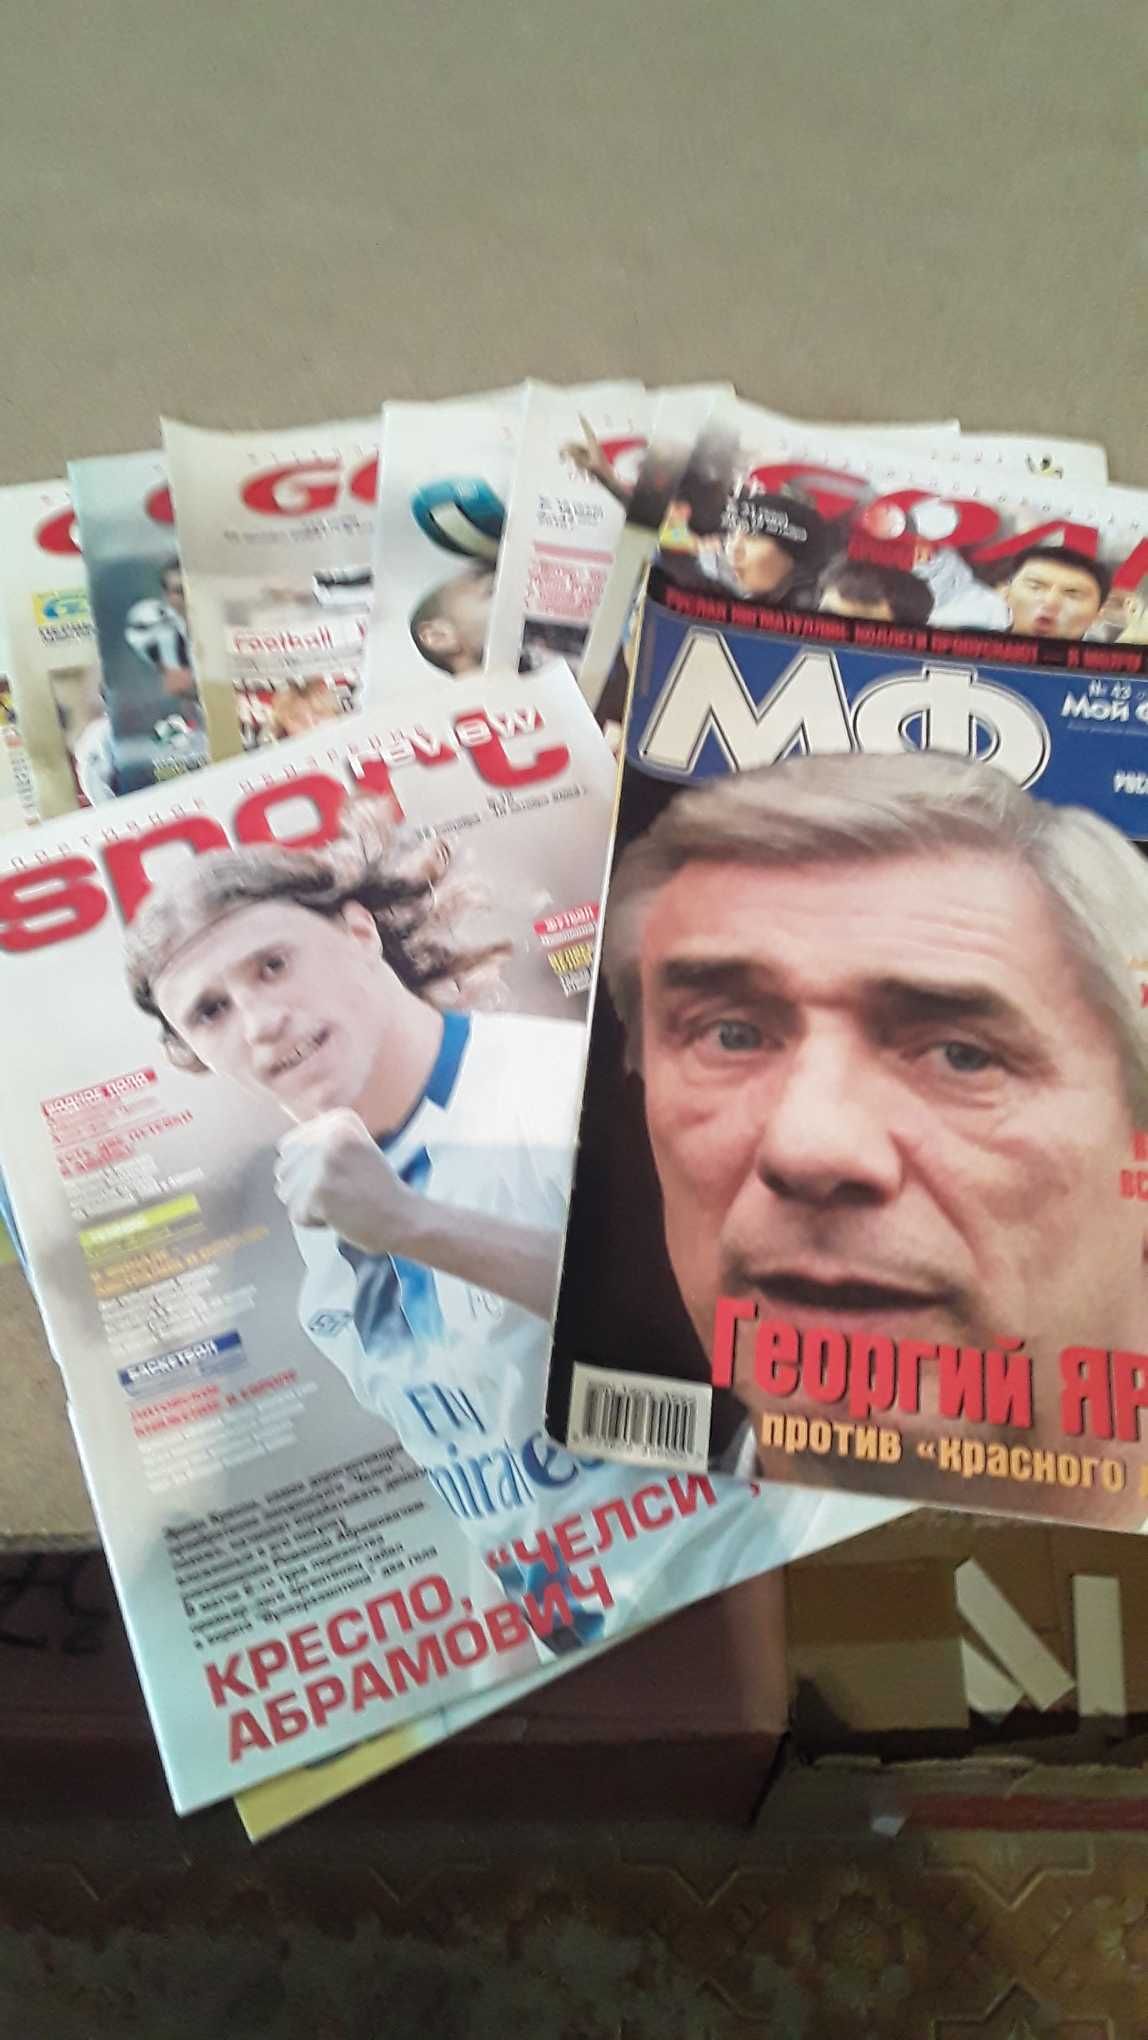 Продам журналы "Футбол" с 2000 по 2008 год